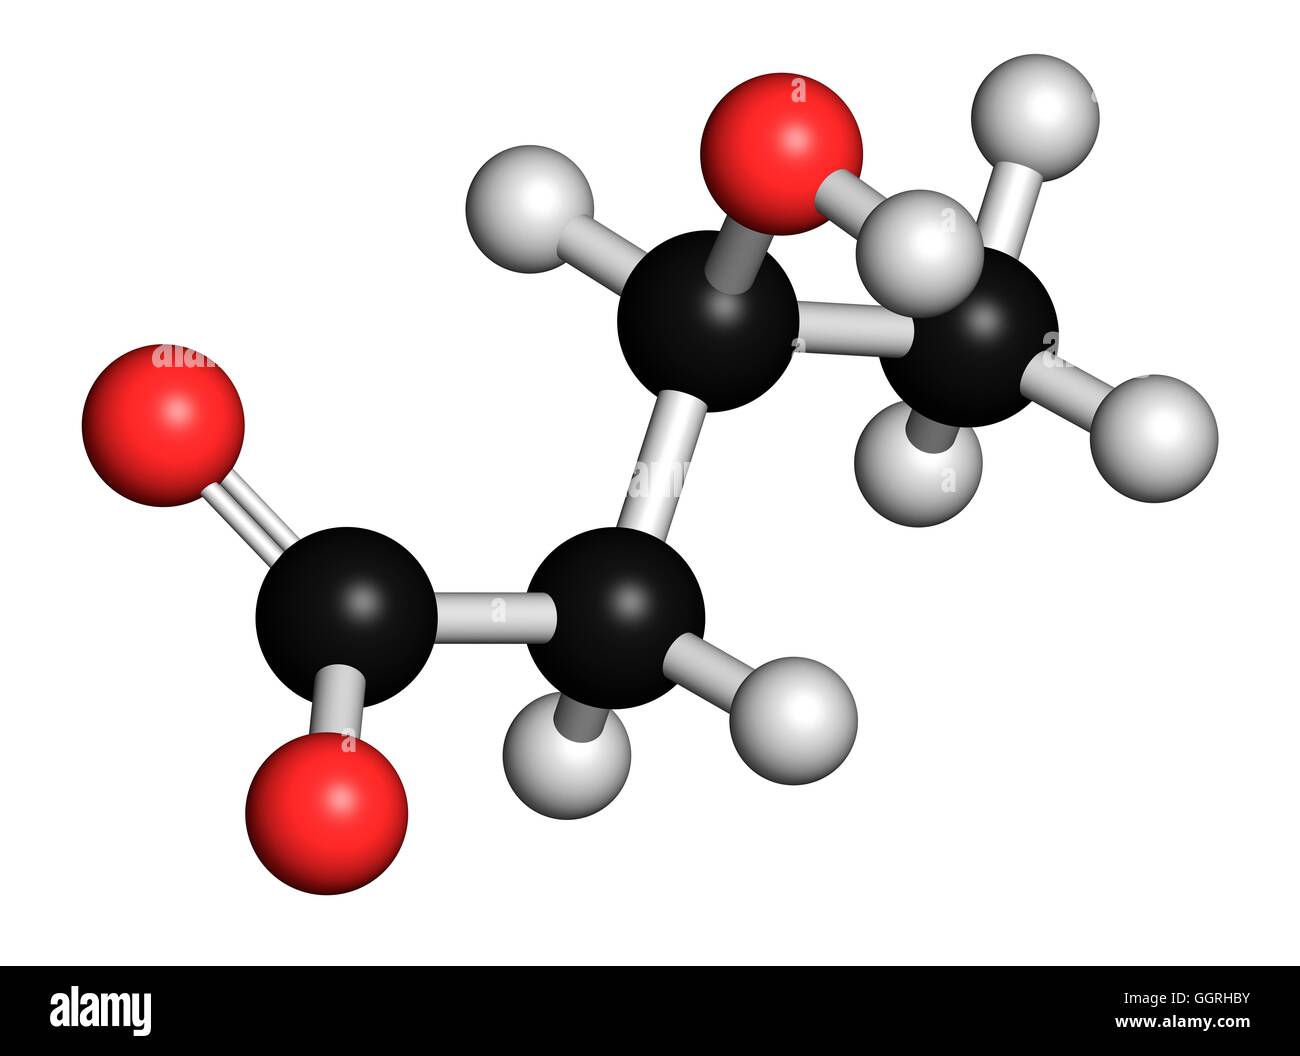 Beta-hidroxibutírico (beta-hidroxibutirato), modelo molecular. Los átomos  son representados como esferas con codificación de color convencional:  hidrógeno (blanco), el carbono (negro), el oxígeno (rojo). Ilustración  Fotografía de stock - Alamy